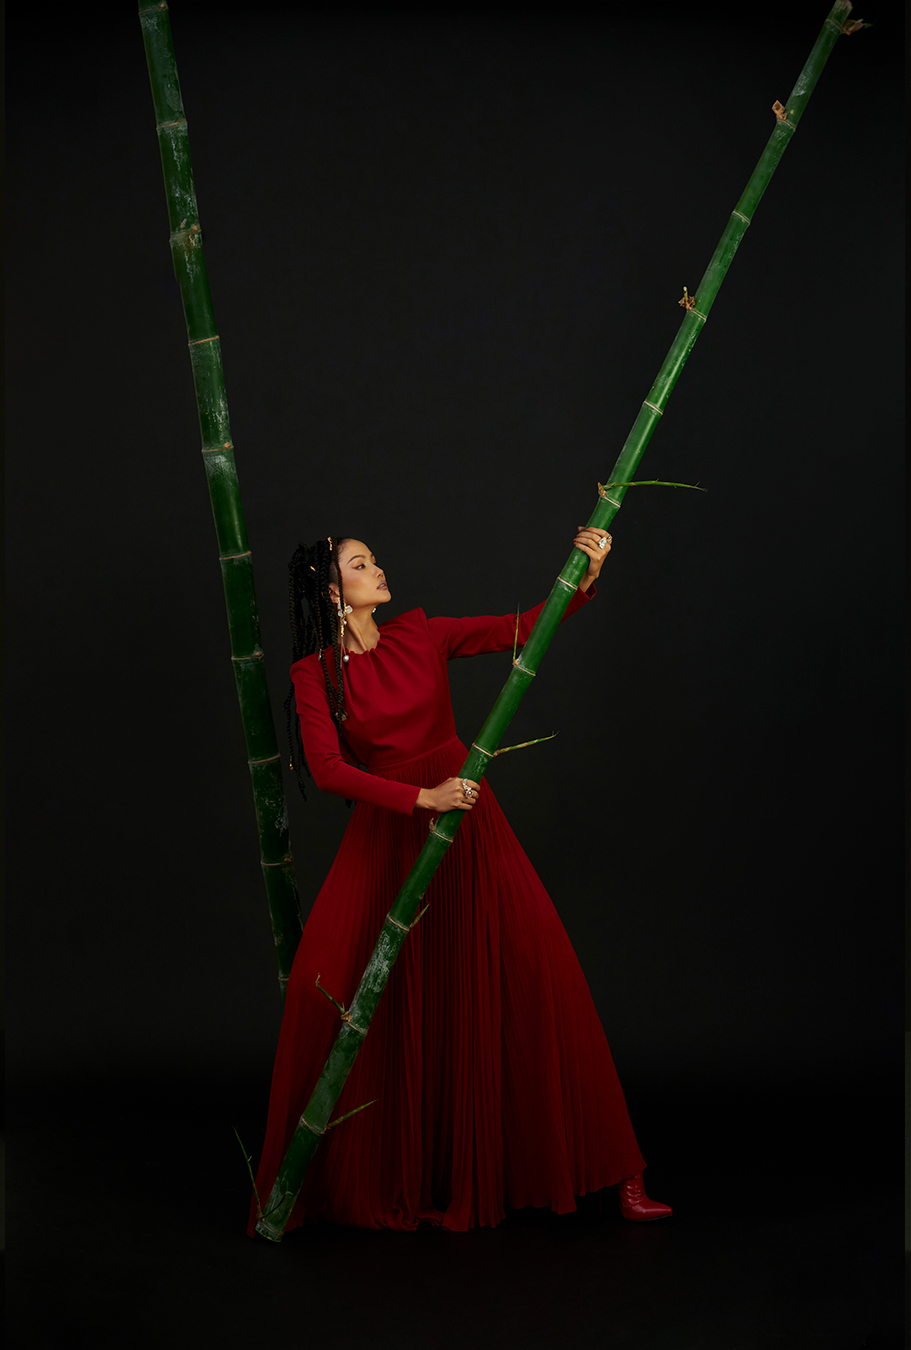 Bộ trang phục đỏ rực cùng hình ảnh vượt qua những rào cản (ẩn dụ thông qua hình ảnh cây tre) của người phụ nữ.